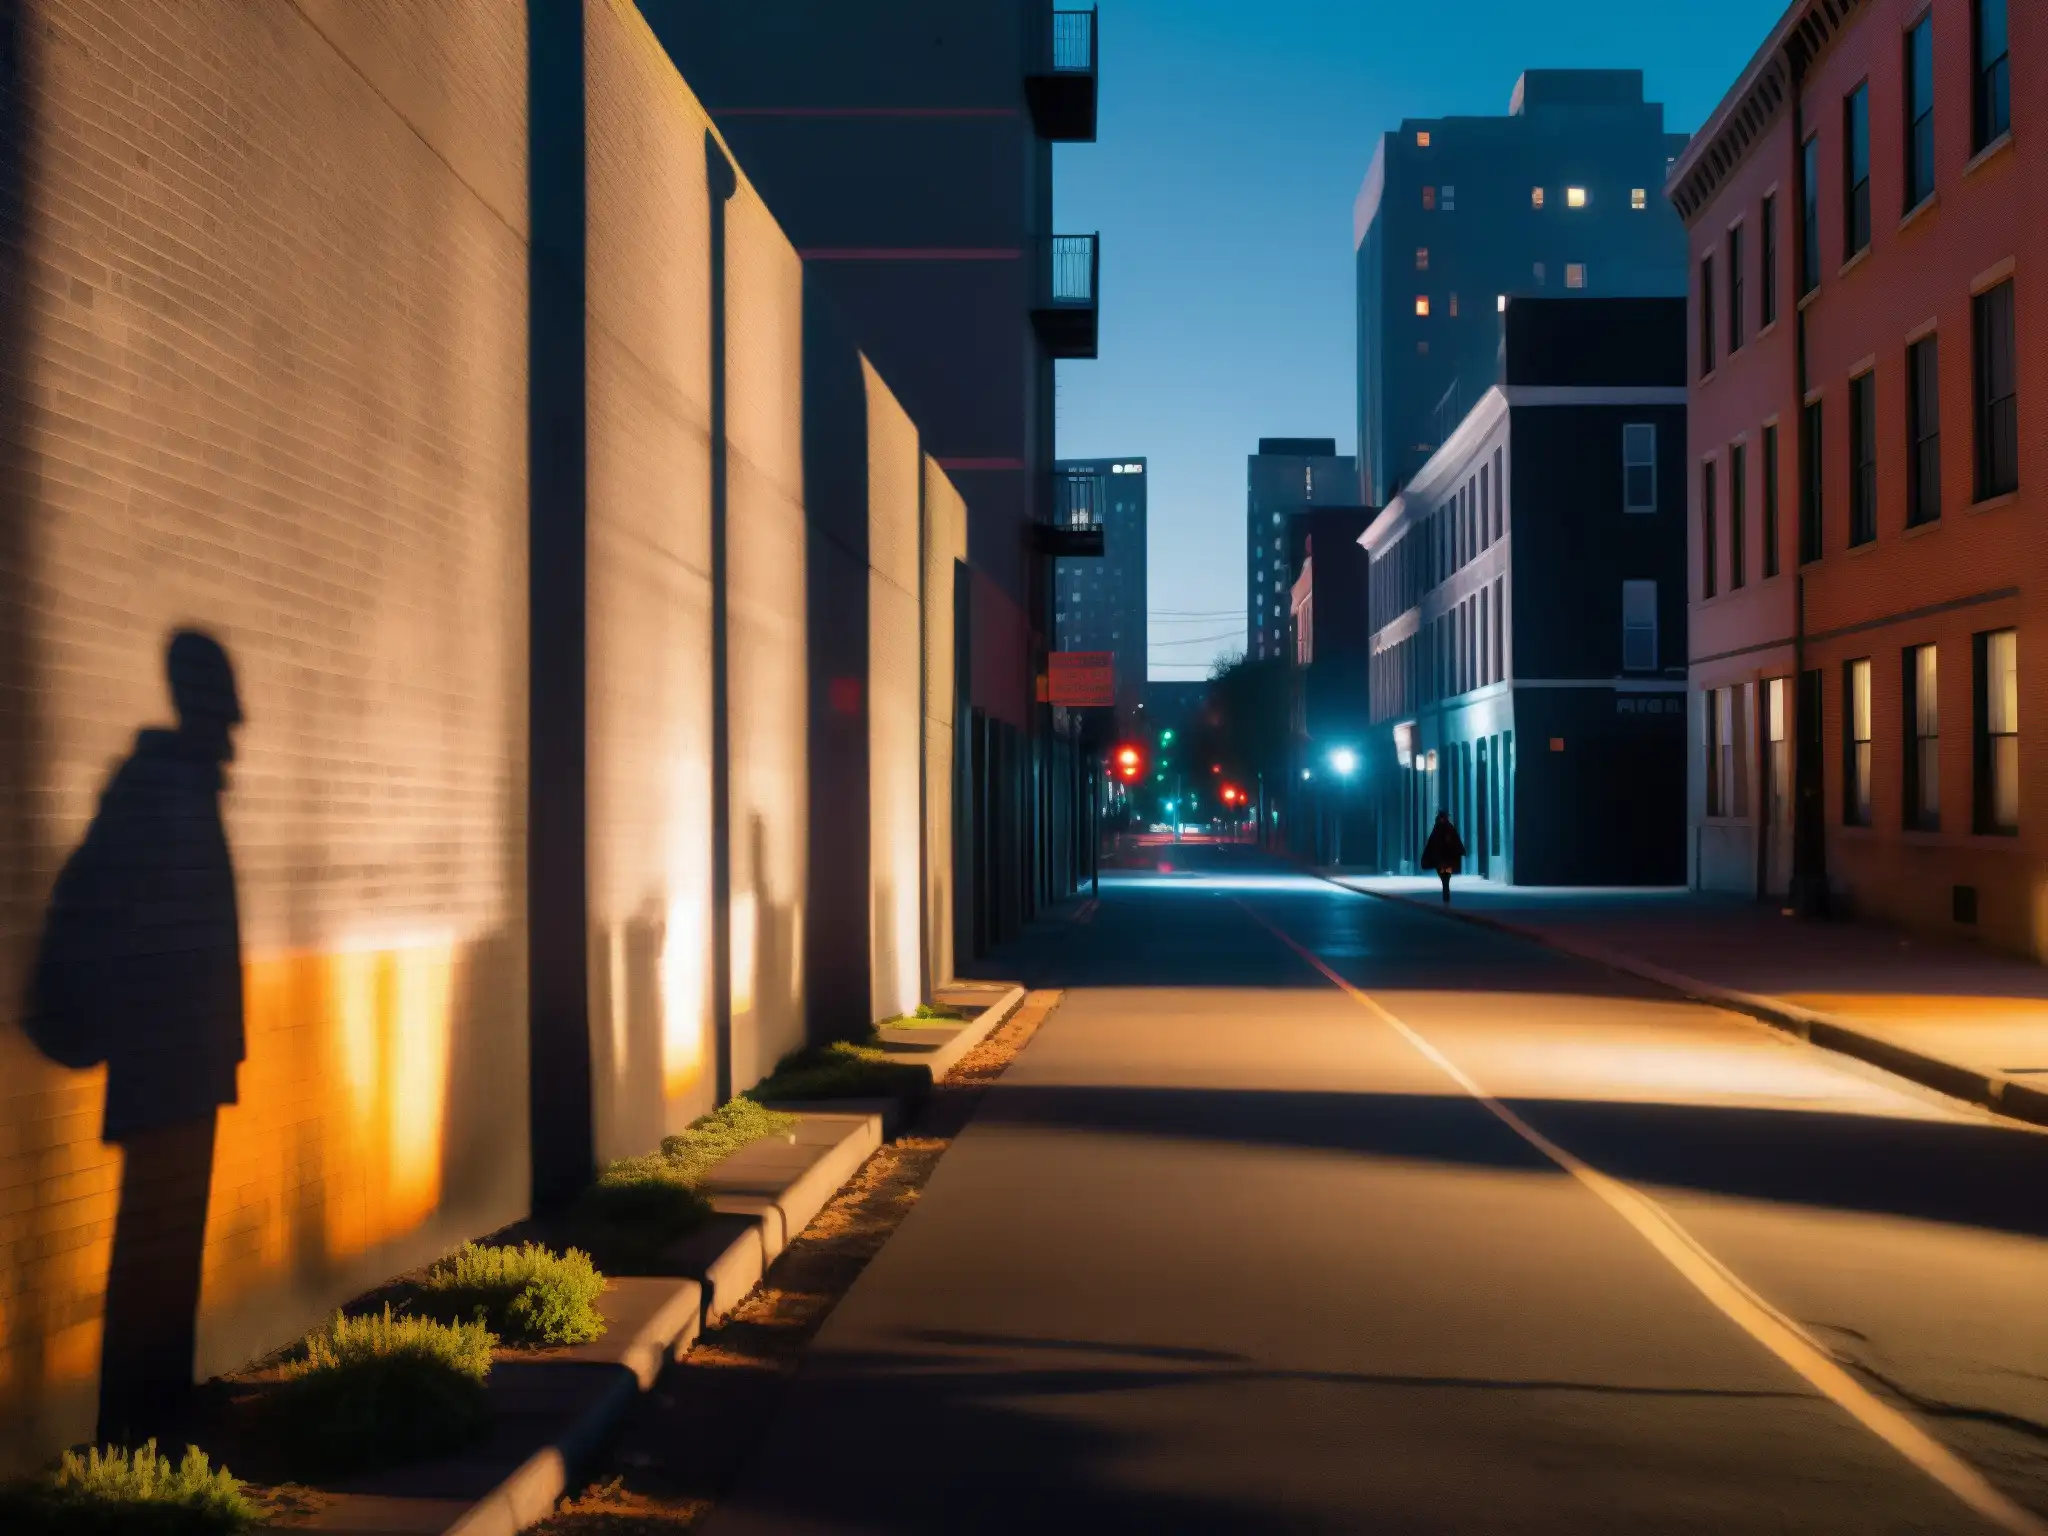 La oscura calle de la ciudad por la noche, con edificios altos proyectando largas sombras